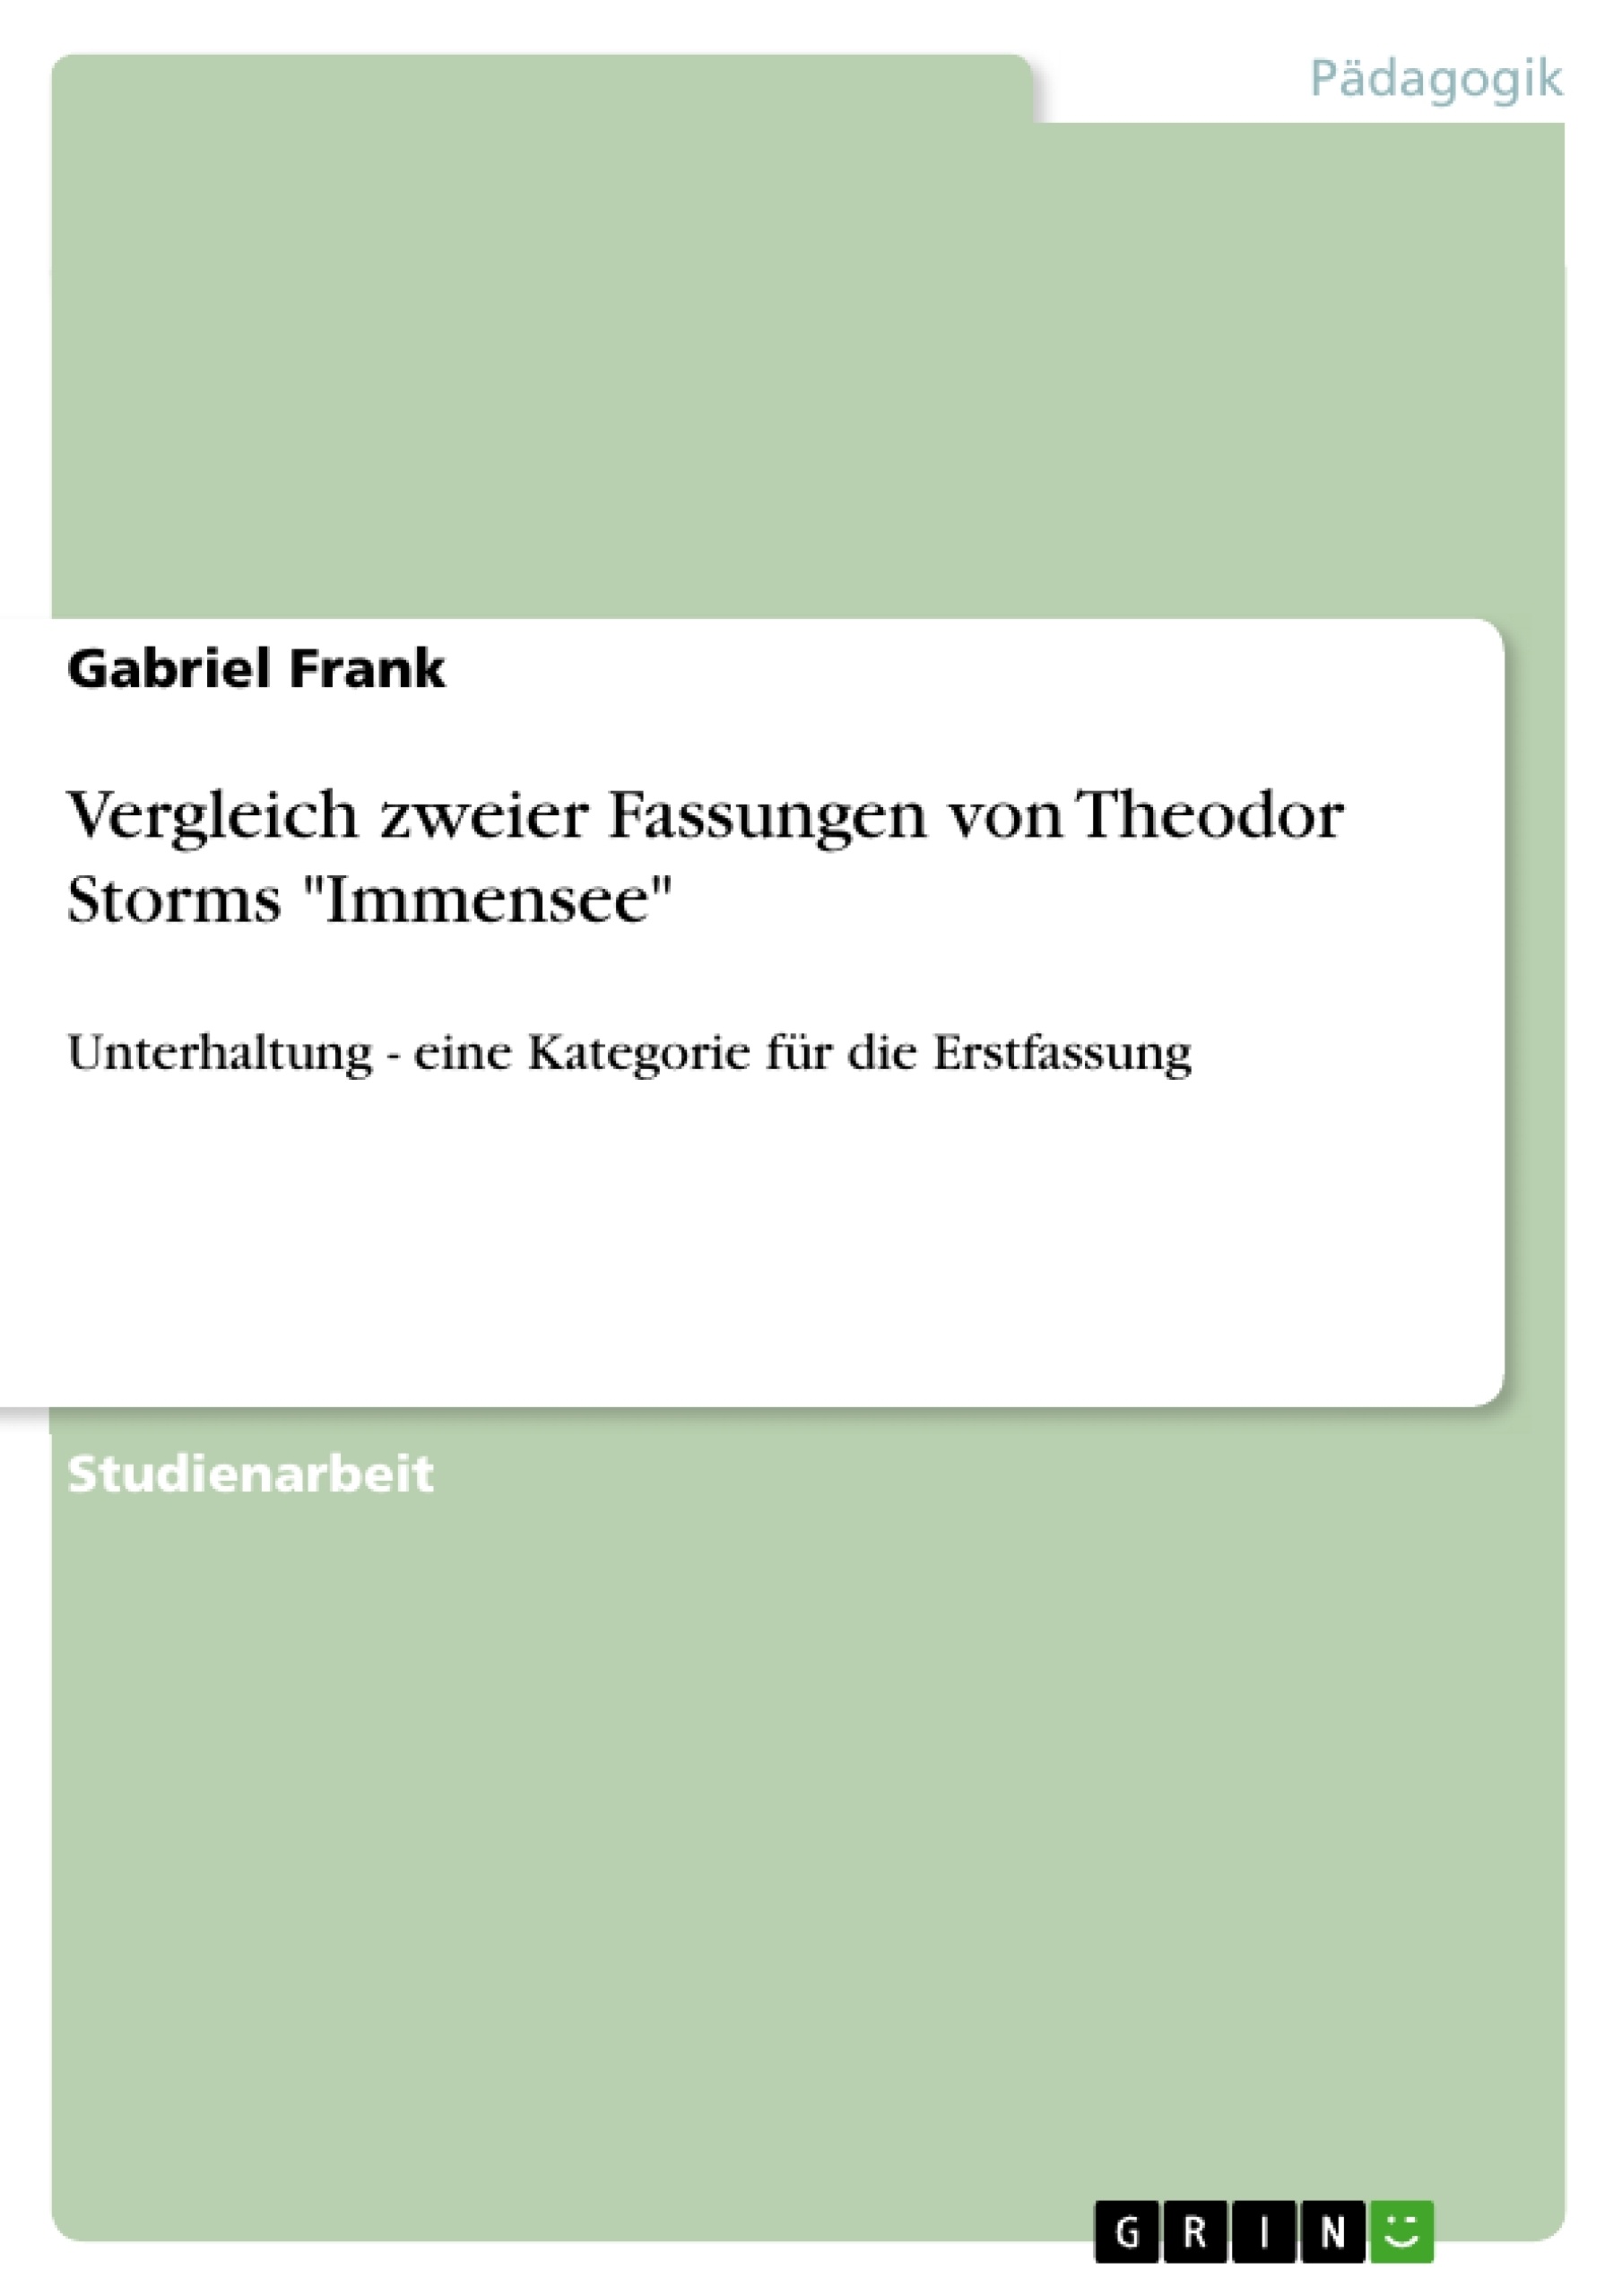 Title: Vergleich zweier Fassungen von Theodor Storms "Immensee"